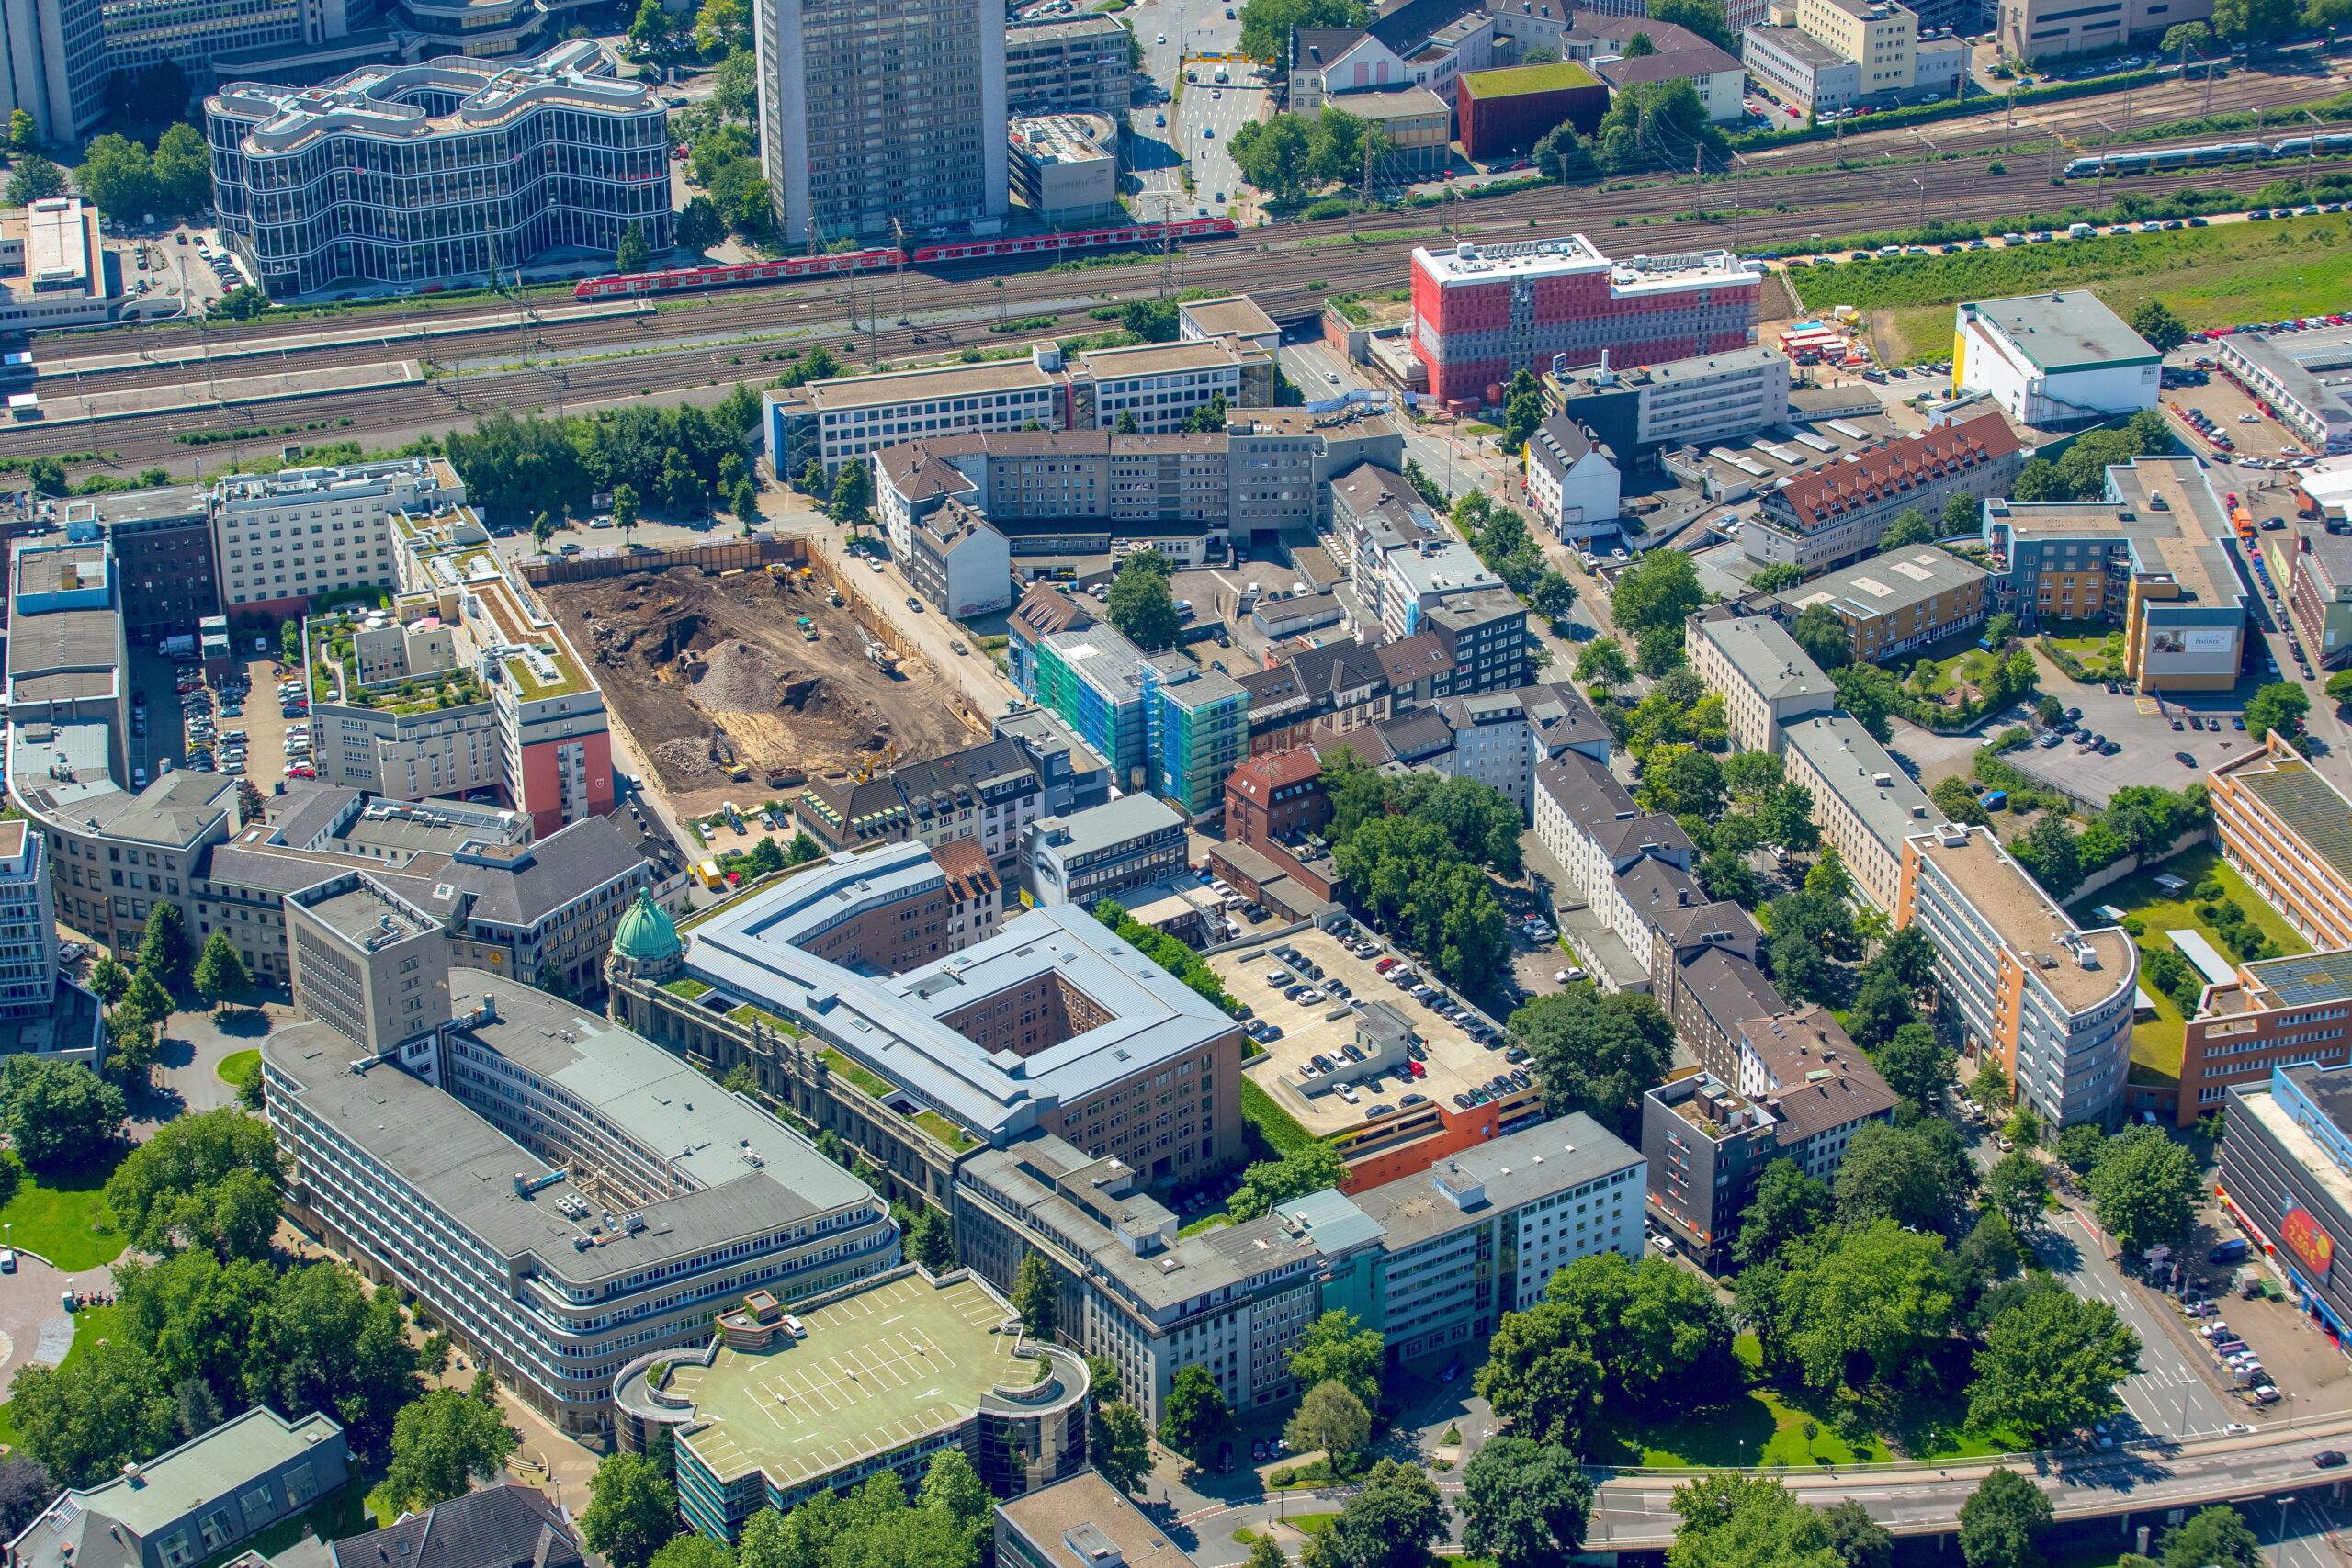 Nicht weit entfernt, ebenfalls an der Hachestraße in Hauptbahnhofsnähe (an der Selmastraße), errichtet das Oberhausener Bau- und Entwicklungs-Unternehmen Arsatec ein Hotel, Büros und 109 Wohnungen. Der Komplex wird nach Fertigstellung Mitte 2018 vom Ruhrgebiets-Immobilien-Riesen Vivawest übernommen.